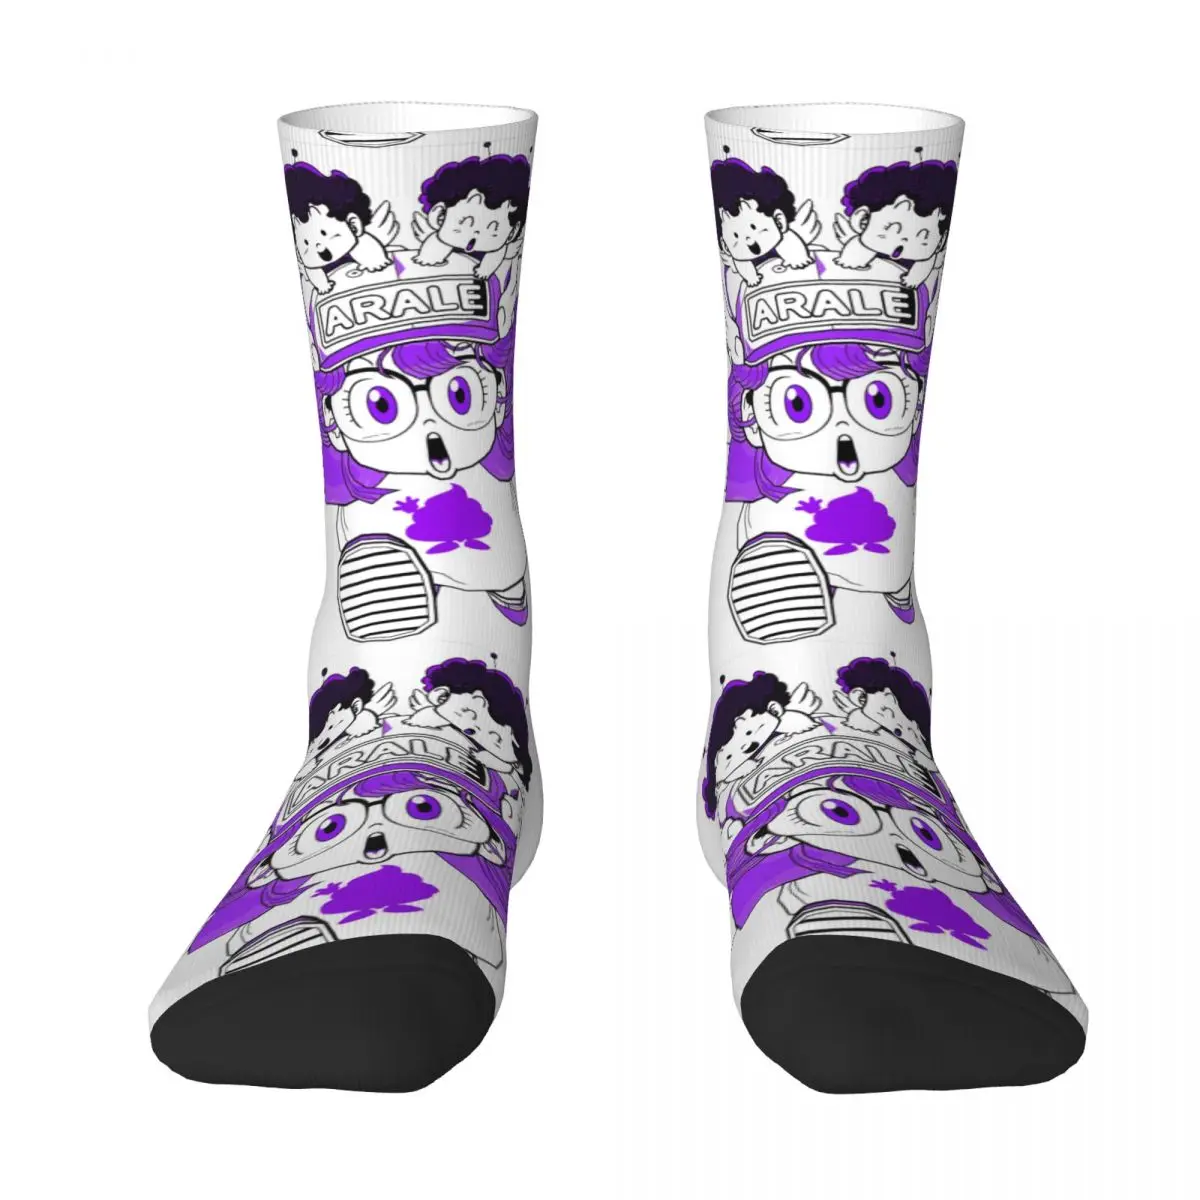 

Arale Norimaki Dr. Slump Socks Hot Sale The Best Buy Funny Joke Color contrast Drawstring Backpack Compression Socks